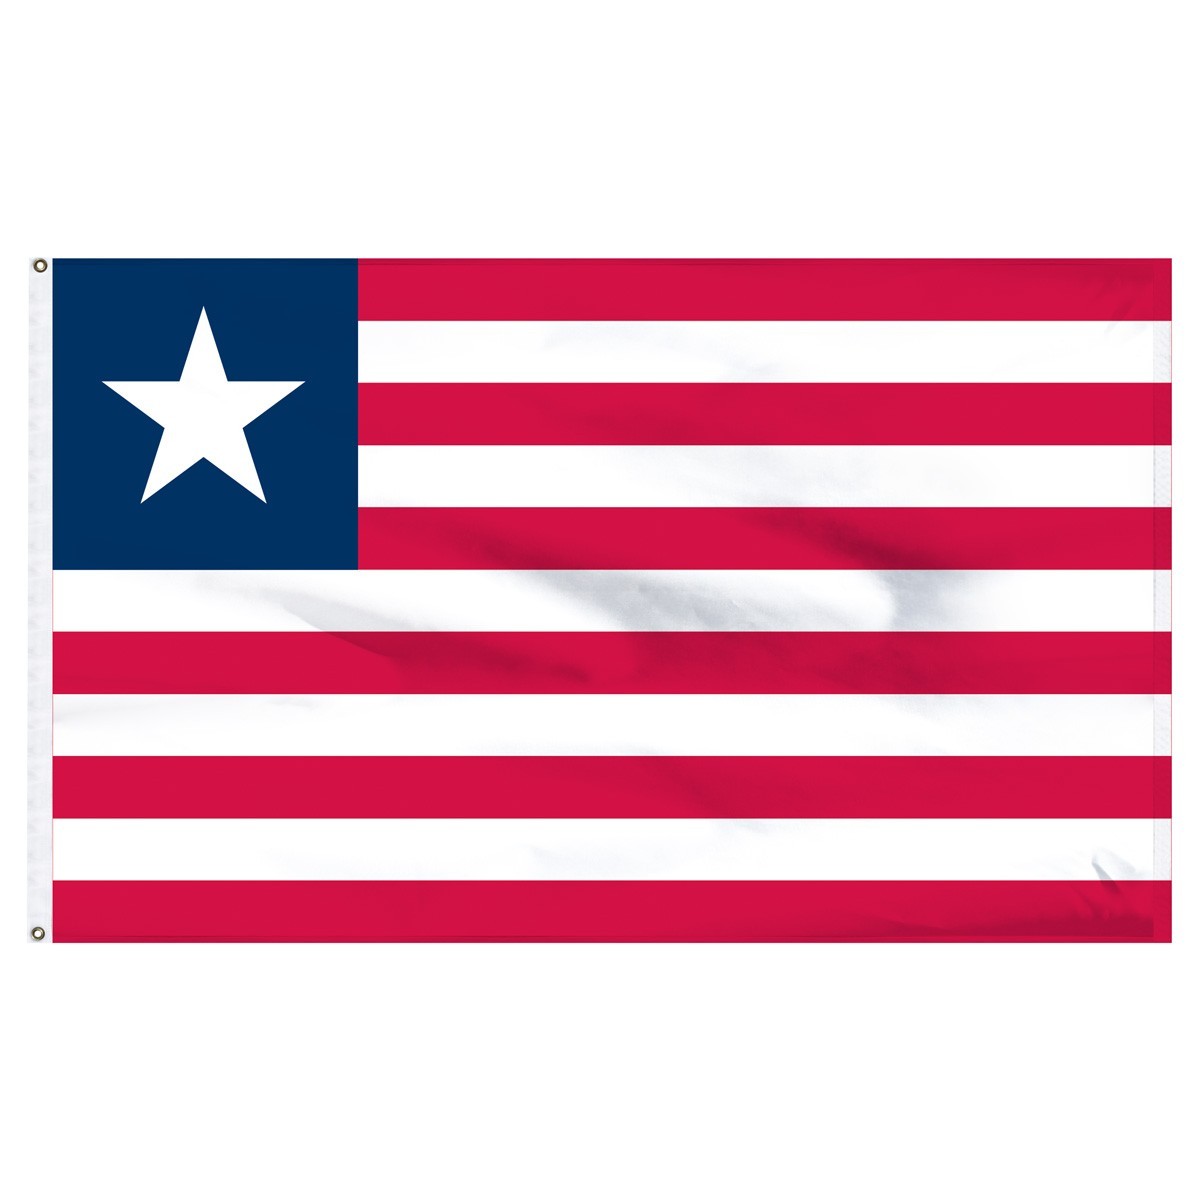 Liberia 5' x 8' Outdoor Nylon Flag